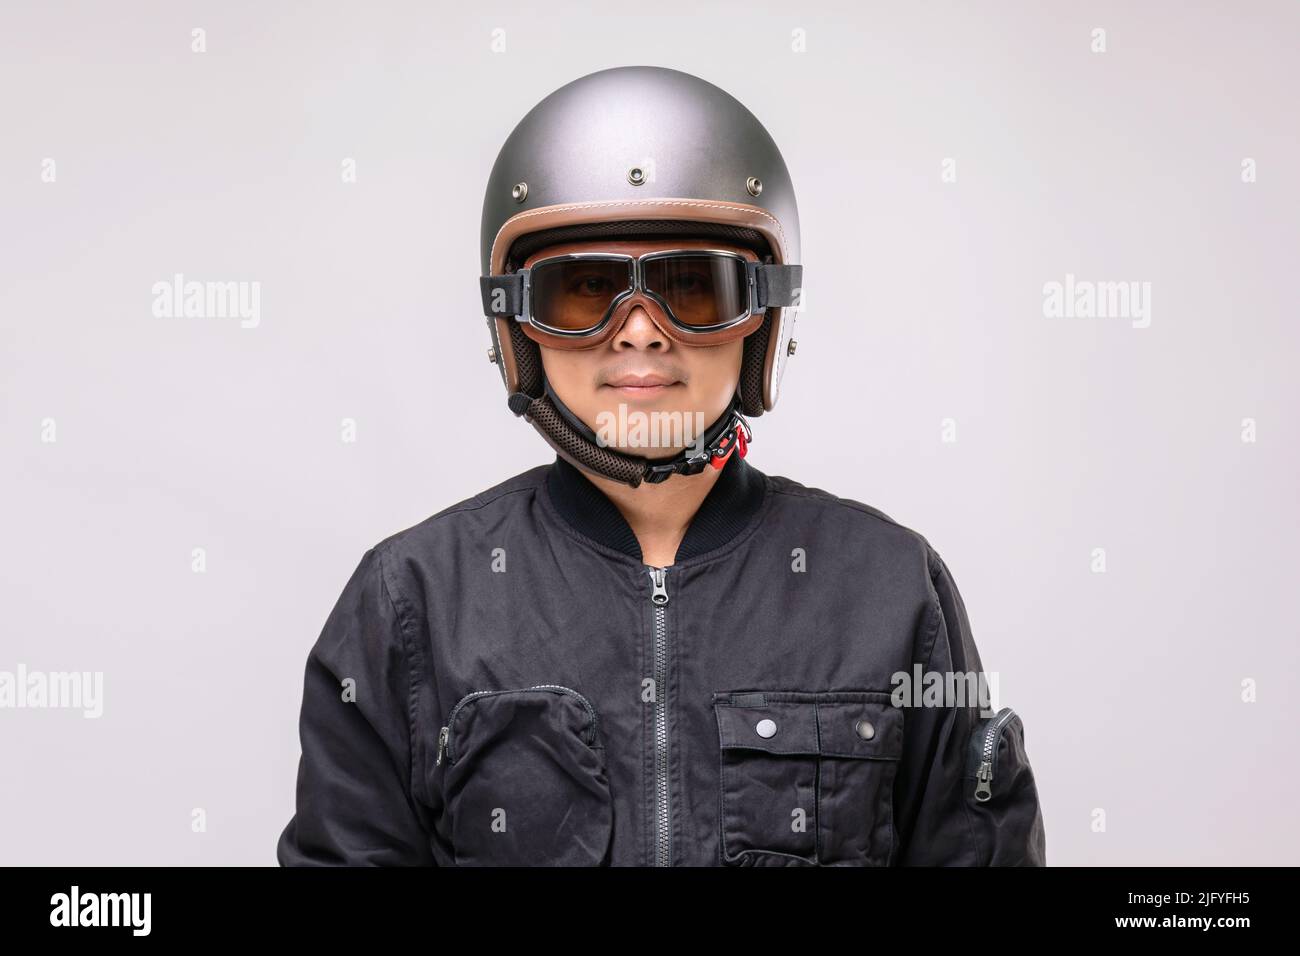 Motociclista o pilota che indossa un casco d'epoca. Concetto di guida sicura. Studio girato su sfondo grigio Foto Stock